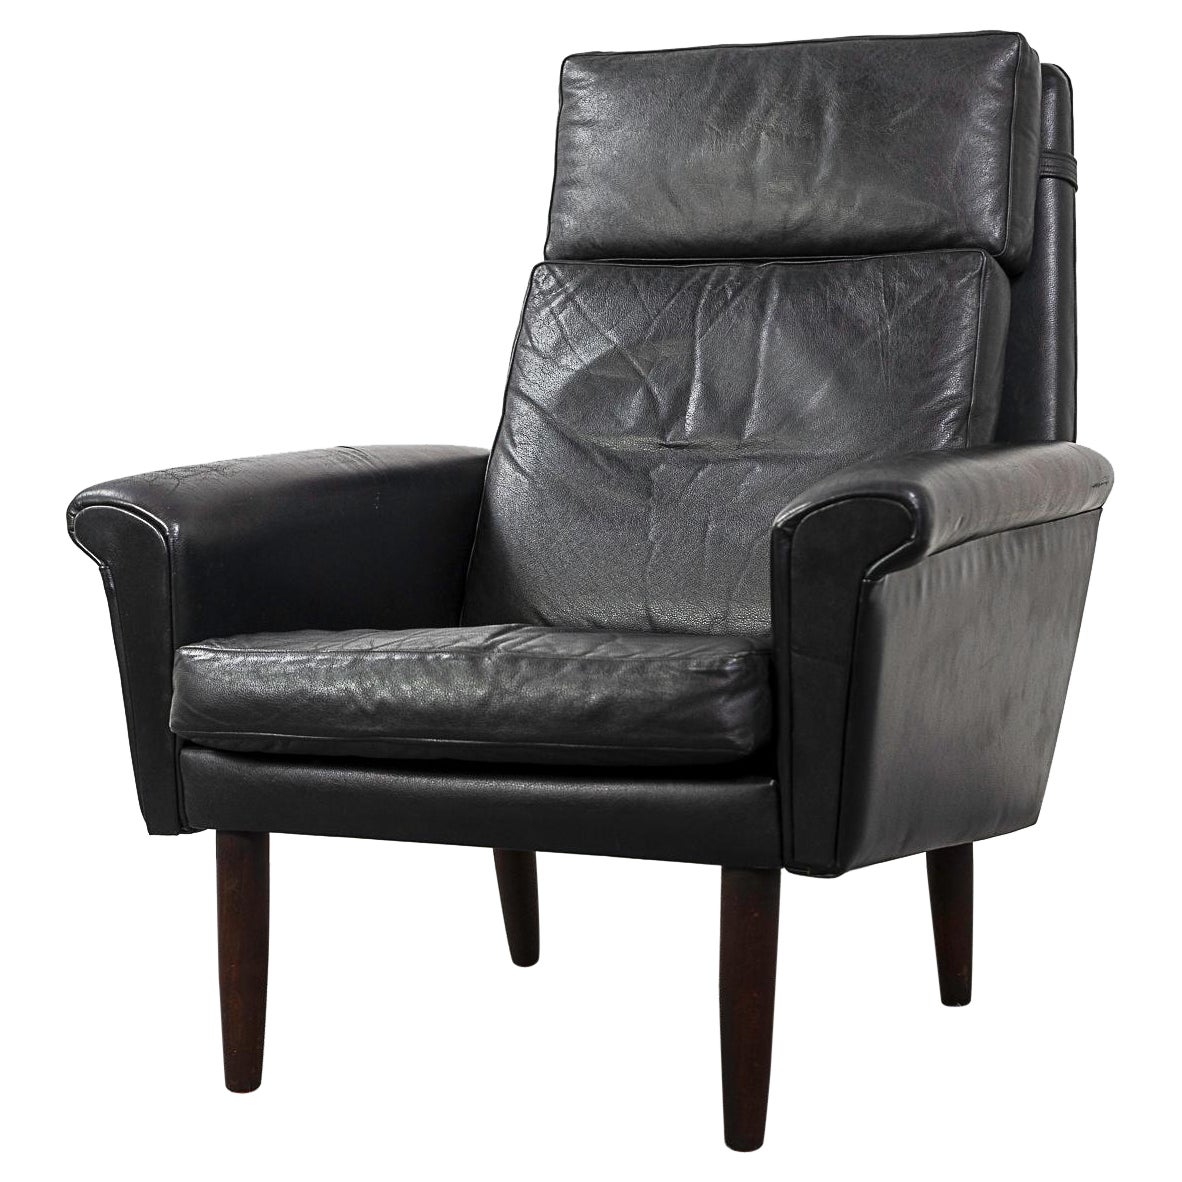 Teak & Leder Dänischer Lounge Stuhl mit hoher Rückenlehne